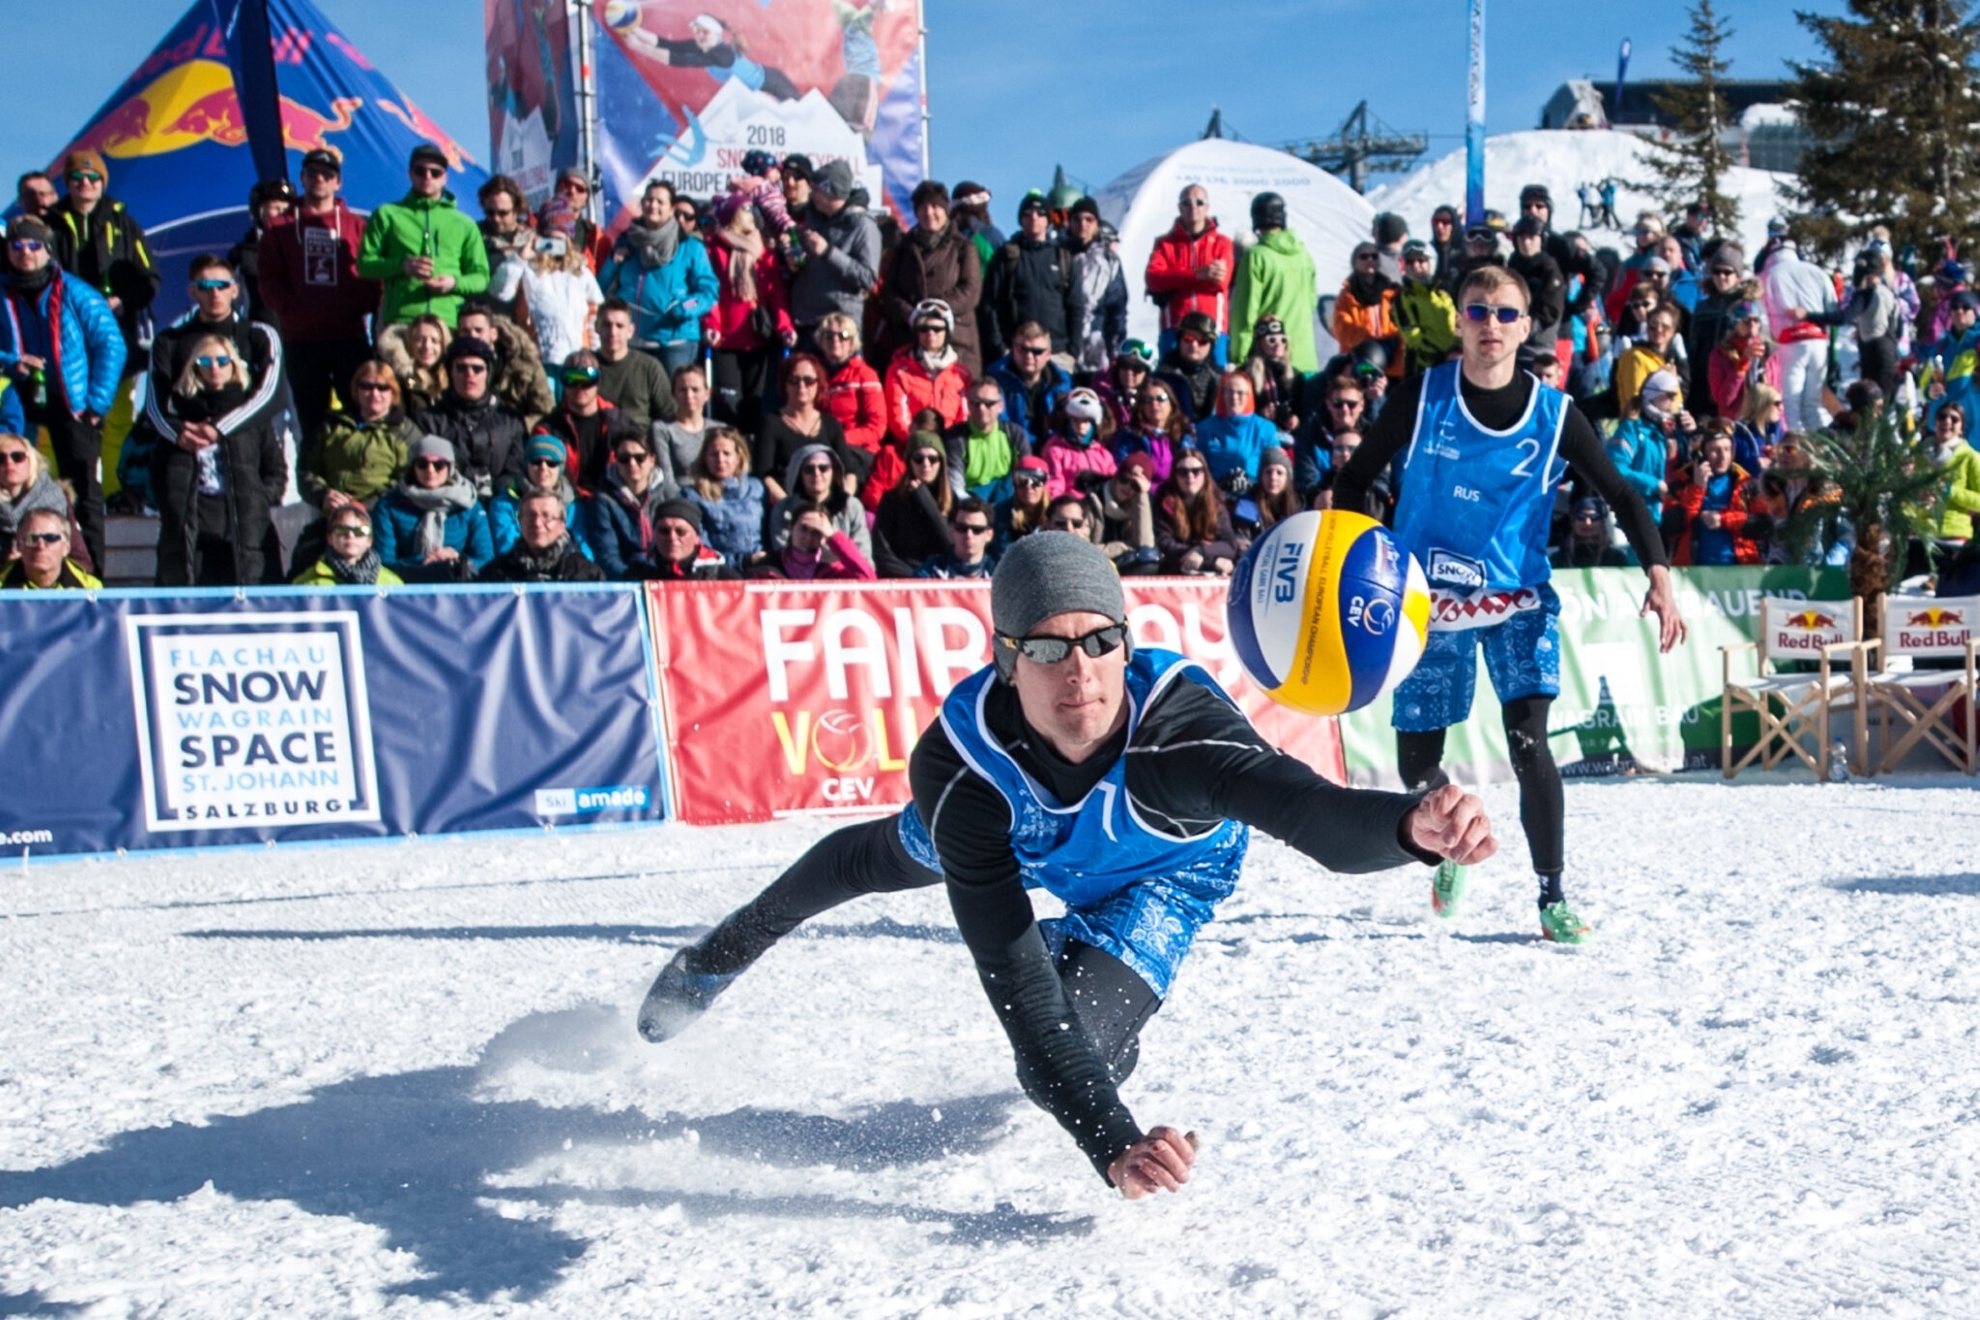 El vóley nieve crece en España: torneo el 11 de marzo en la estación de esquí Boí Taüll